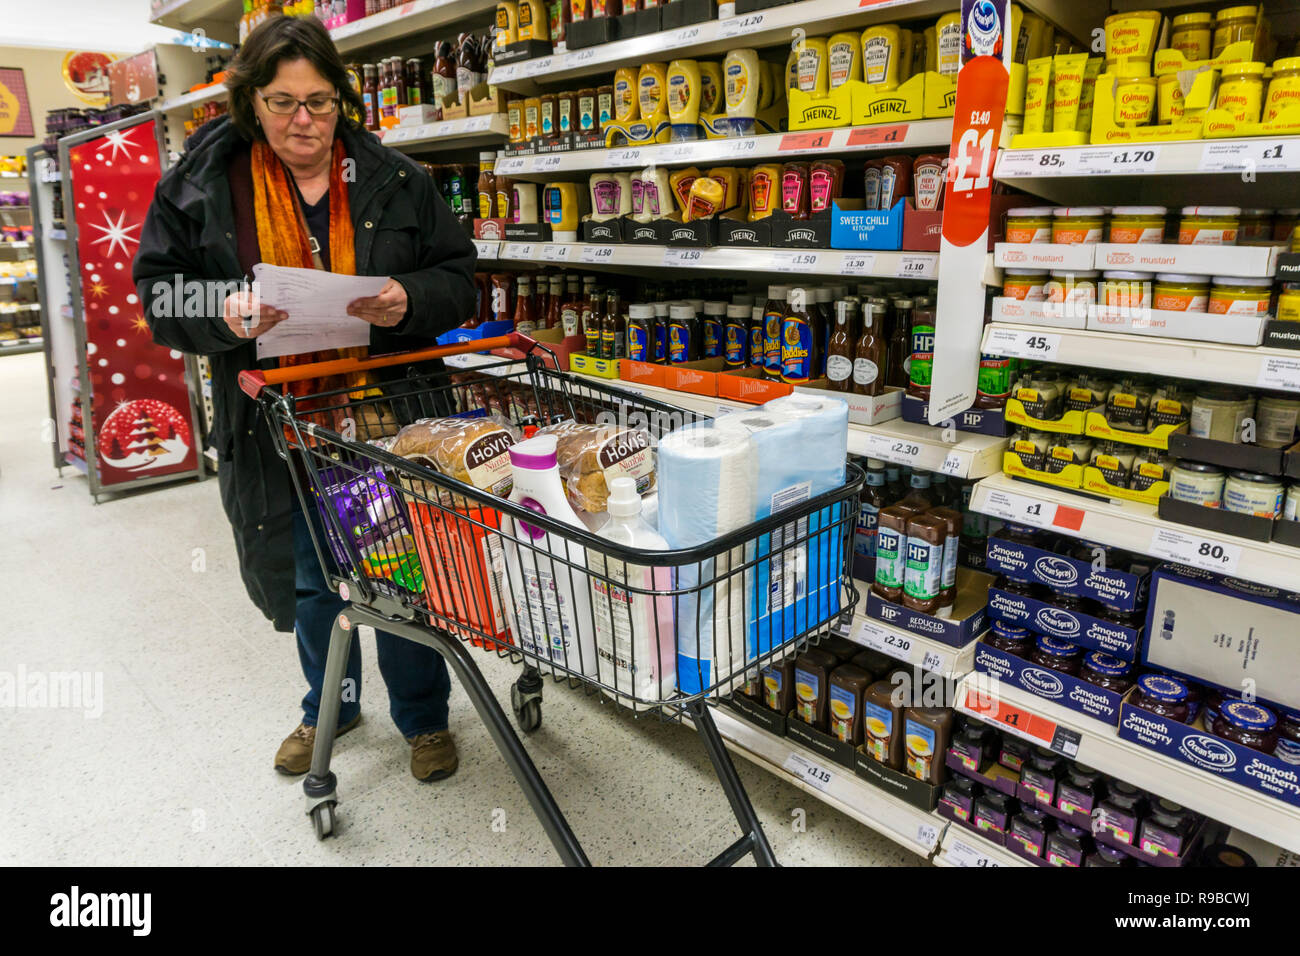 Frau die Kontrolle einer handgeschriebenen Einkaufszettel neben einem vollen Supermarkt Trolley. Belästigt, Last Minute Shopping besorgt. Stockfoto